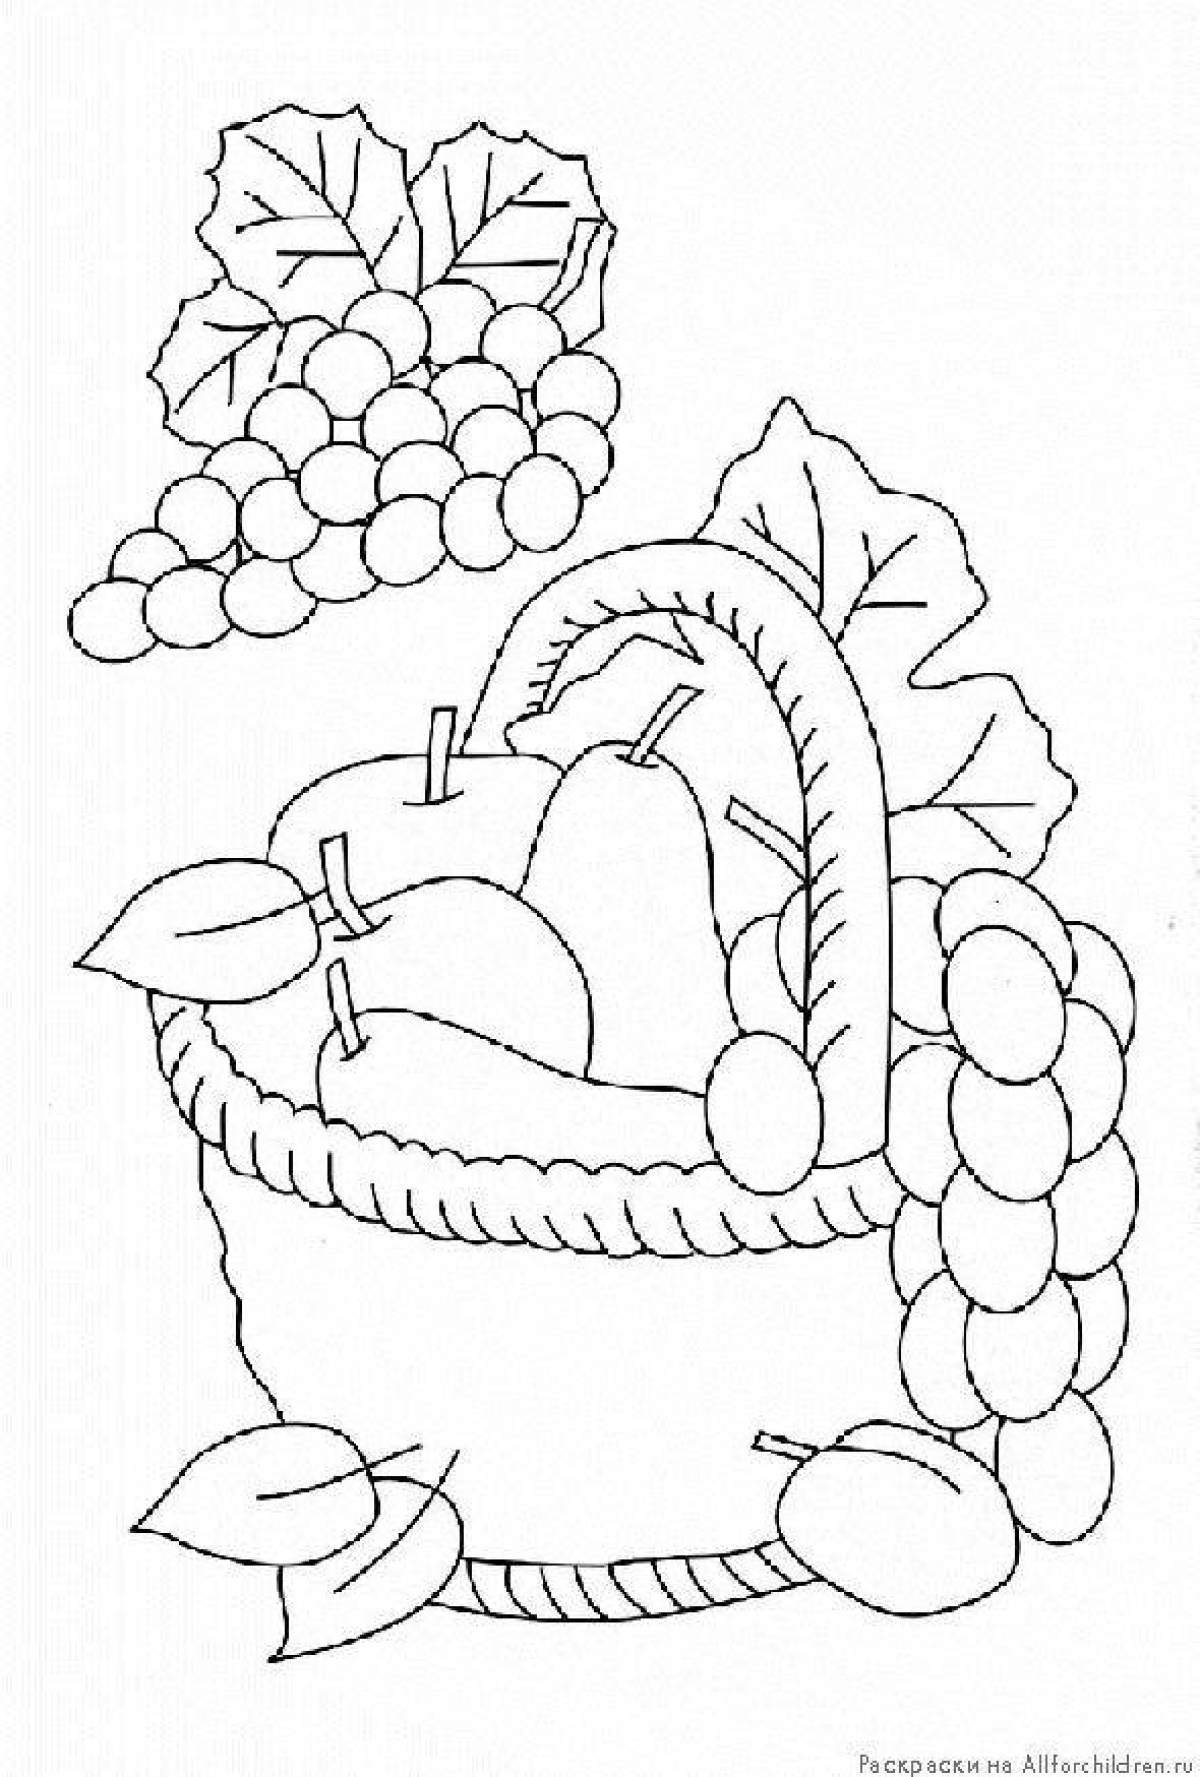 Coloring book shining fruit basket